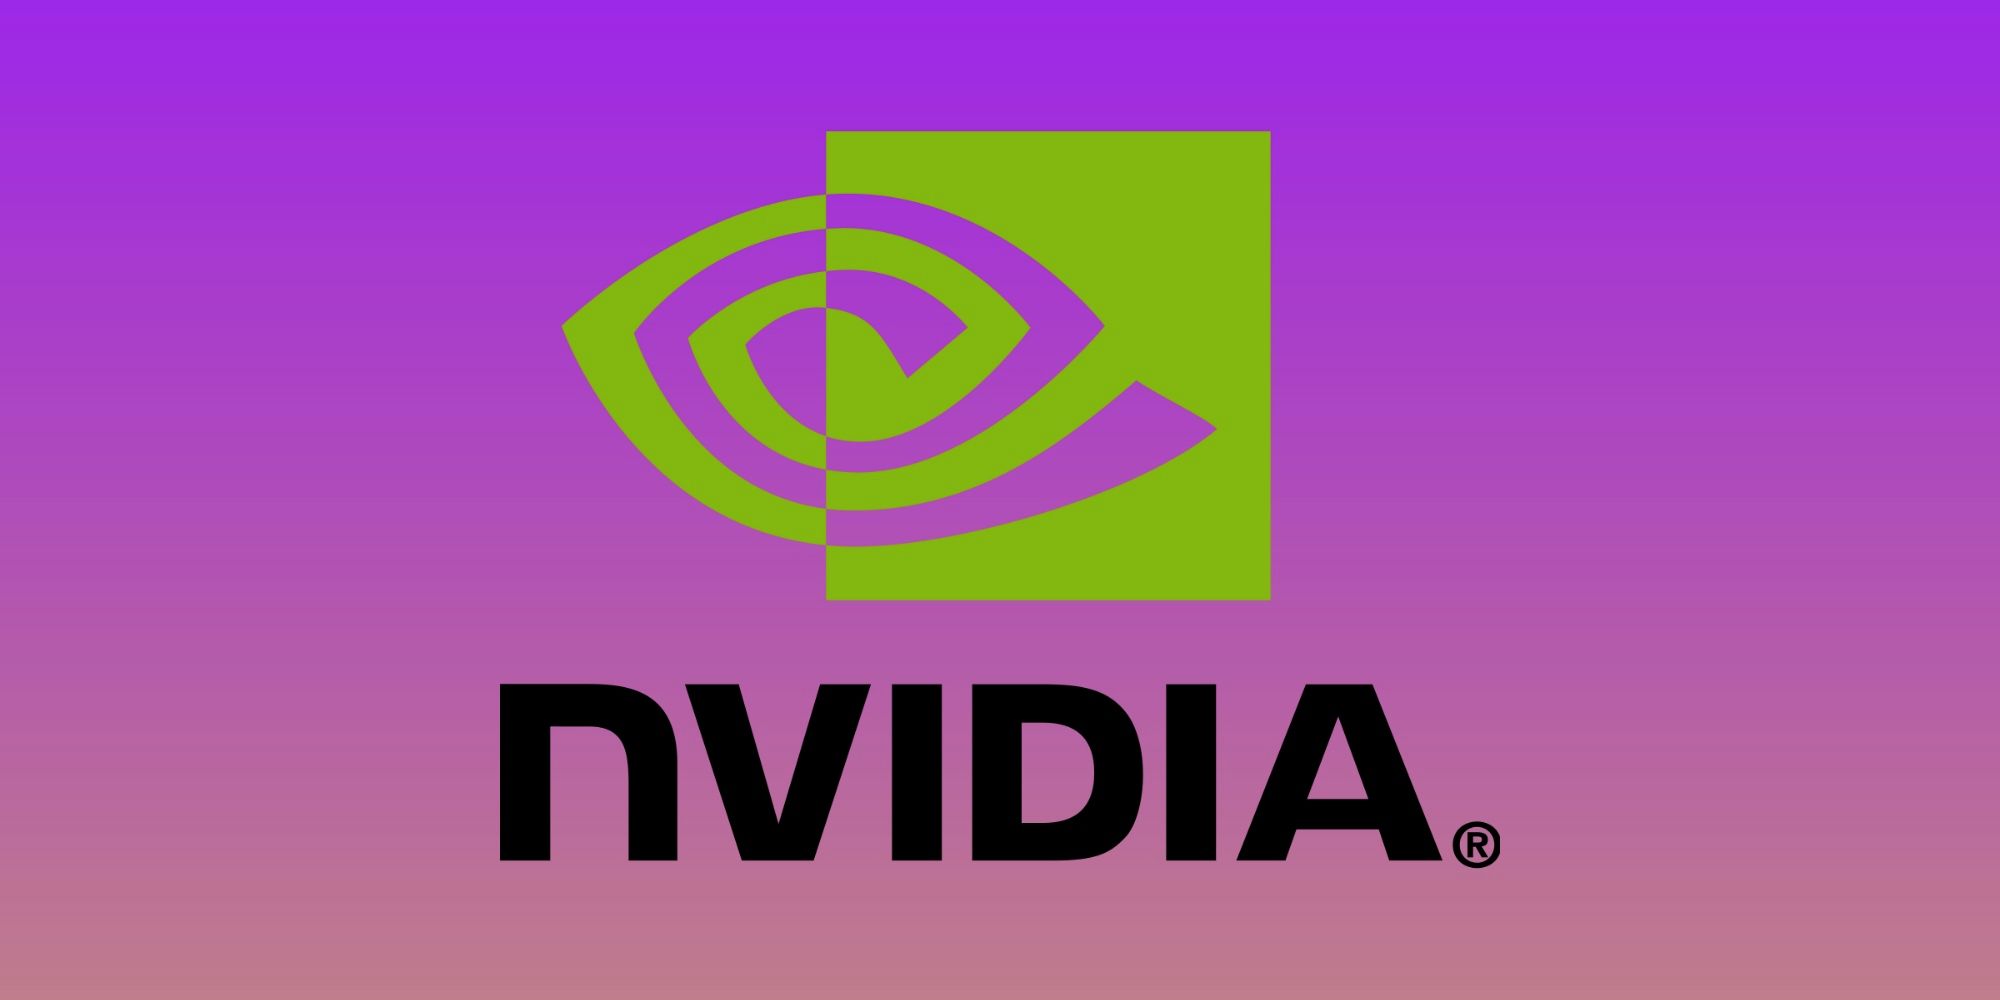 Nvidia mintió sobre cuántas GPU vendió a criptomineros